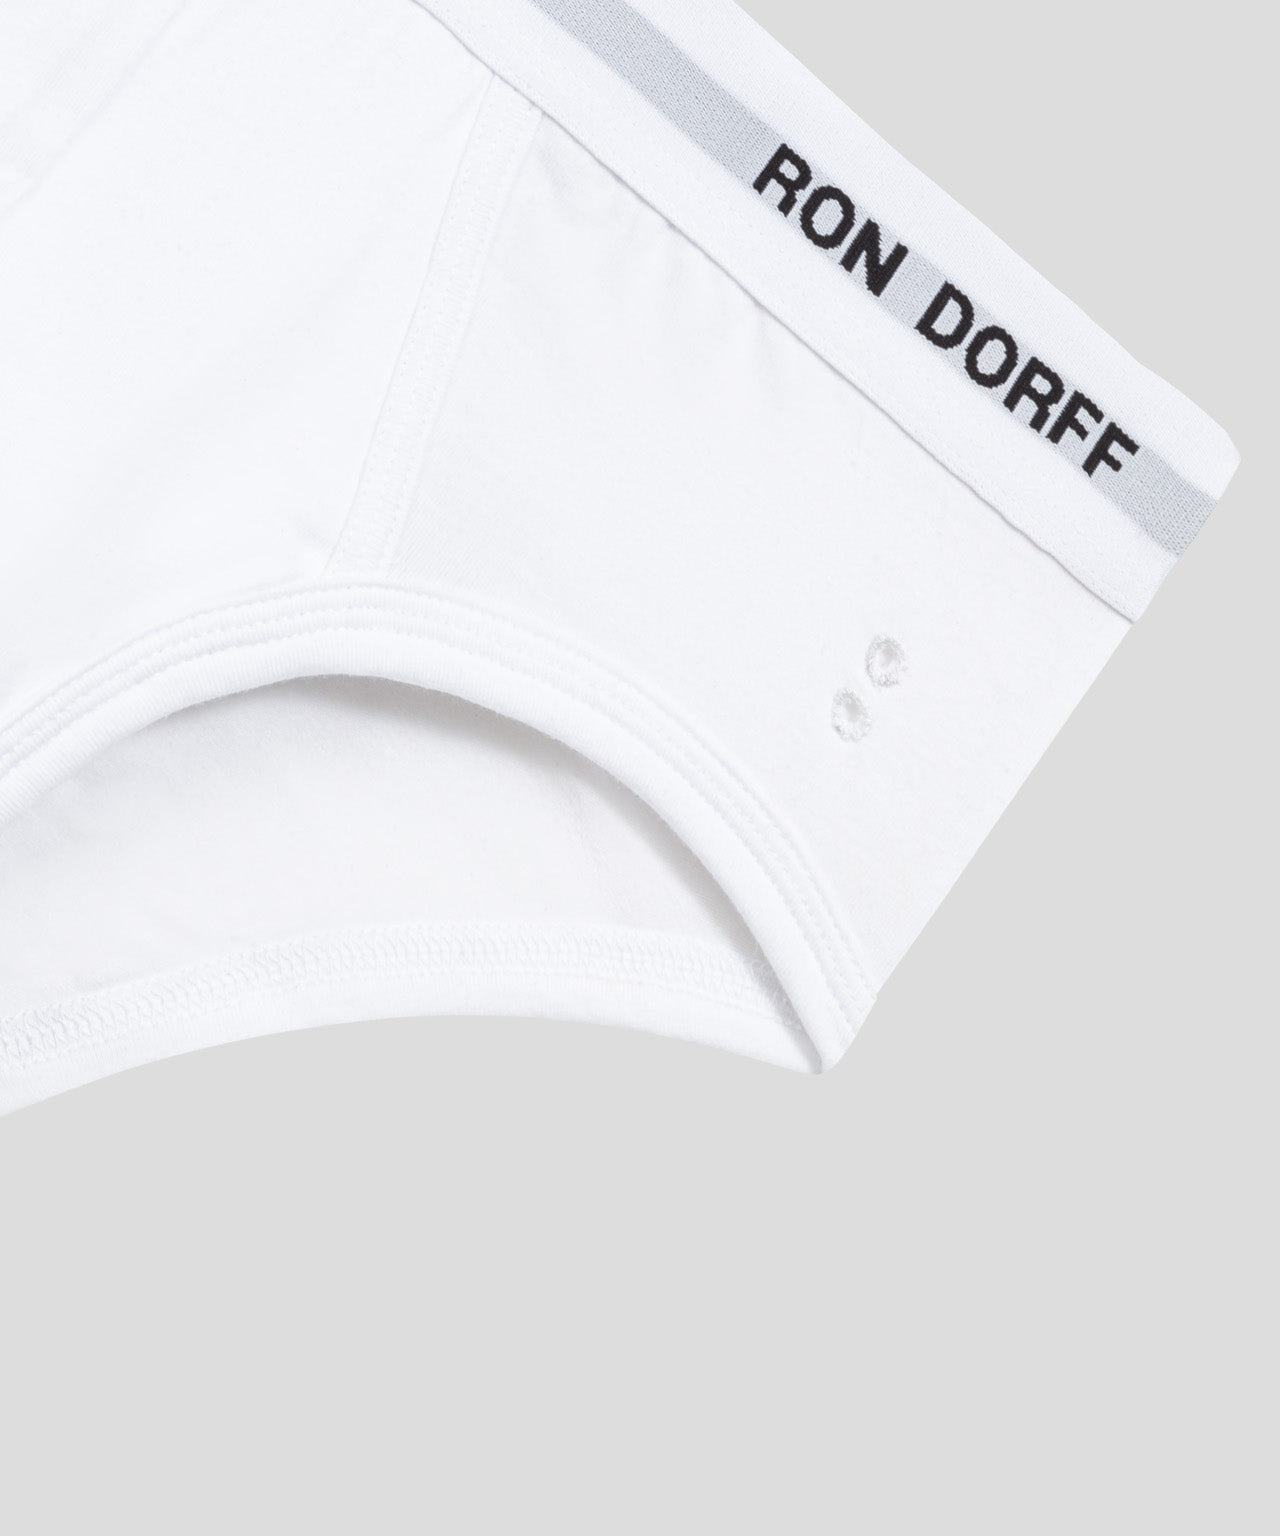 RON DORFF Y-Front Briefs Kit: Navy/White/Black